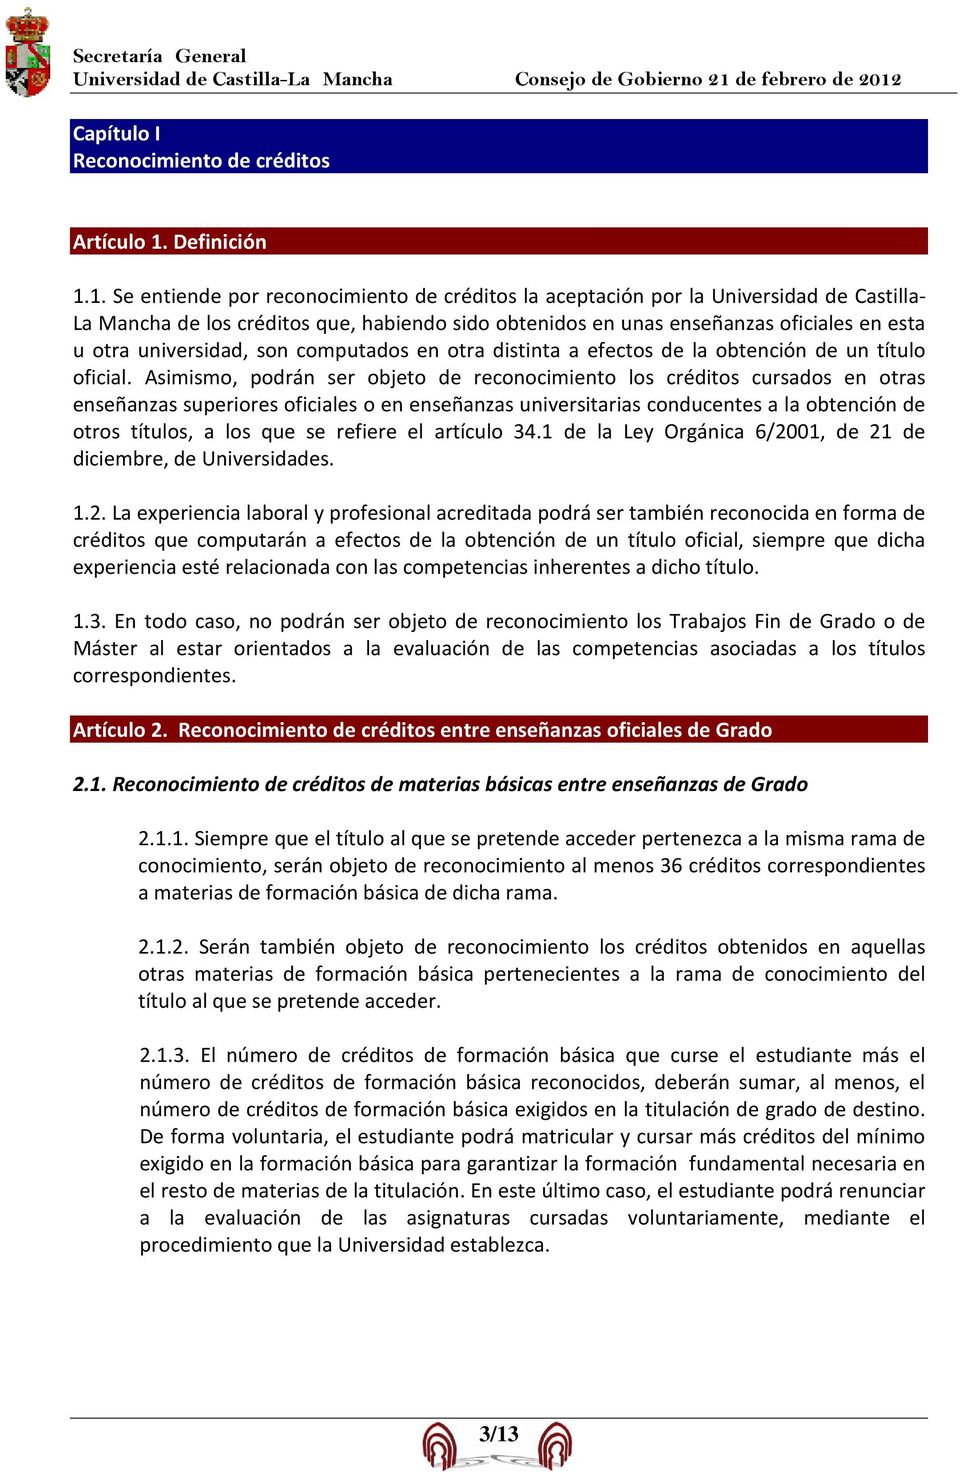 1. Se entiende por reconocimiento de créditos la aceptación por la Universidad de Castilla- La Mancha de los créditos que, habiendo sido obtenidos en unas enseñanzas oficiales en esta u otra